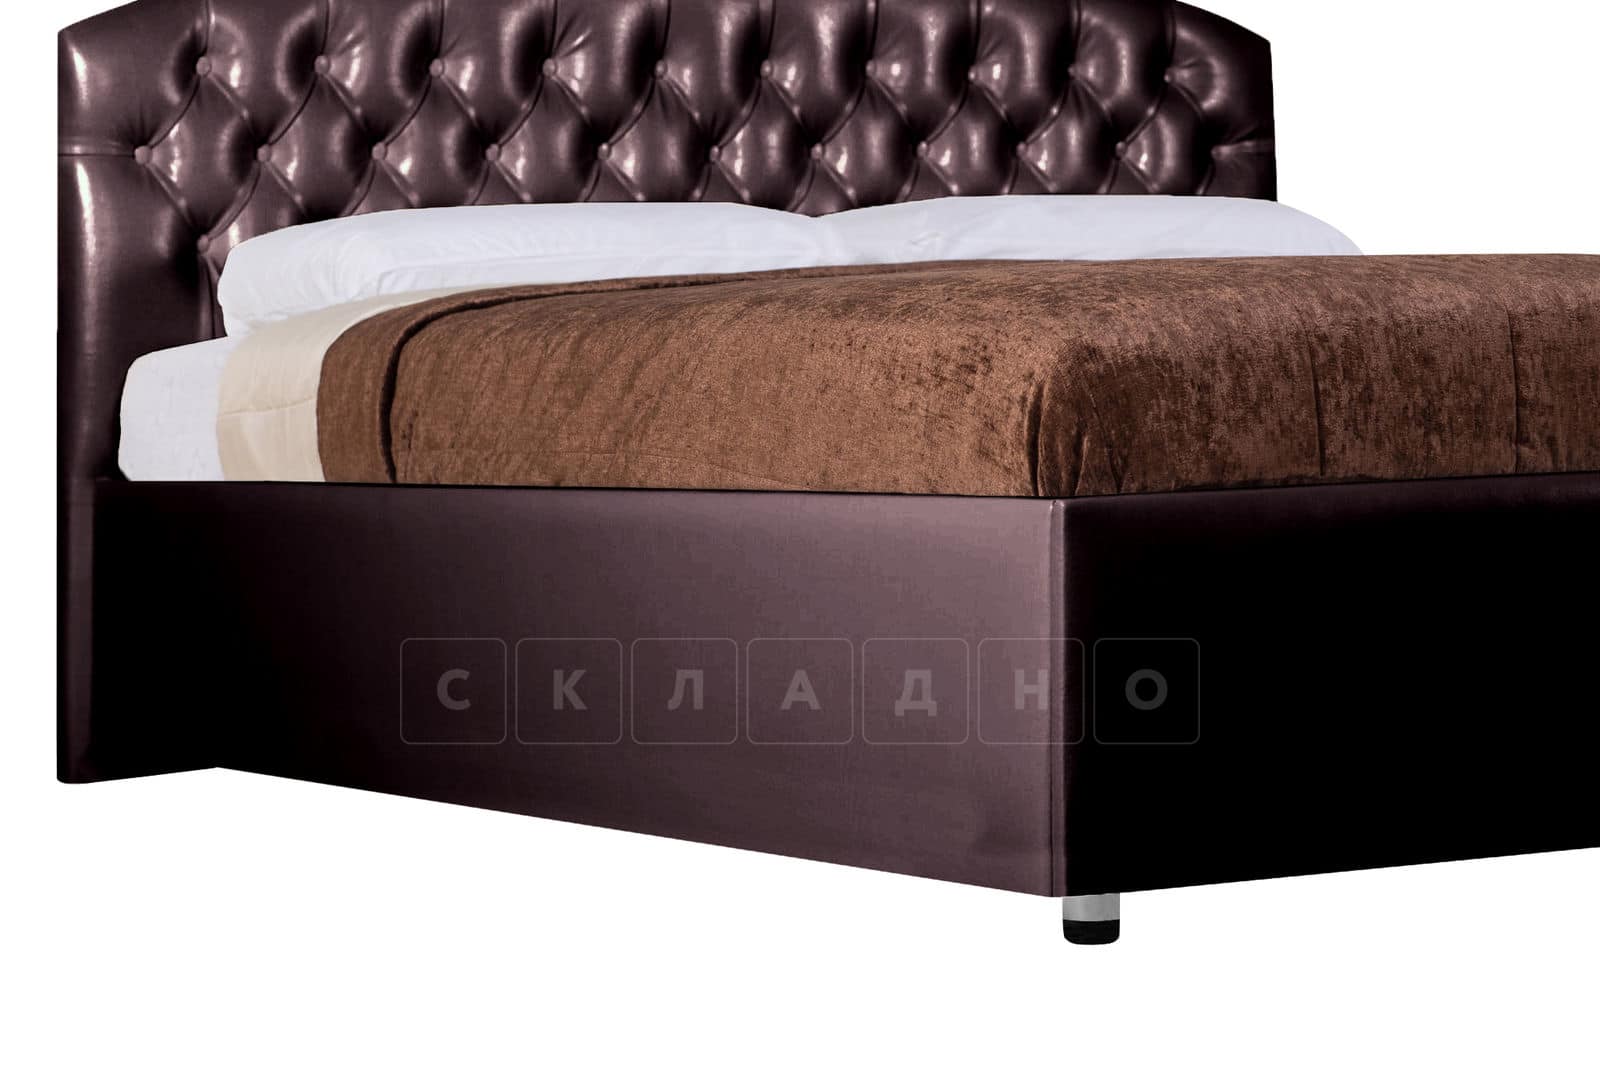 Мягкая кровать Малибу 160 см экокожа шоколадного цвета вариант 1-2 фото 8 | интернет-магазин Складно